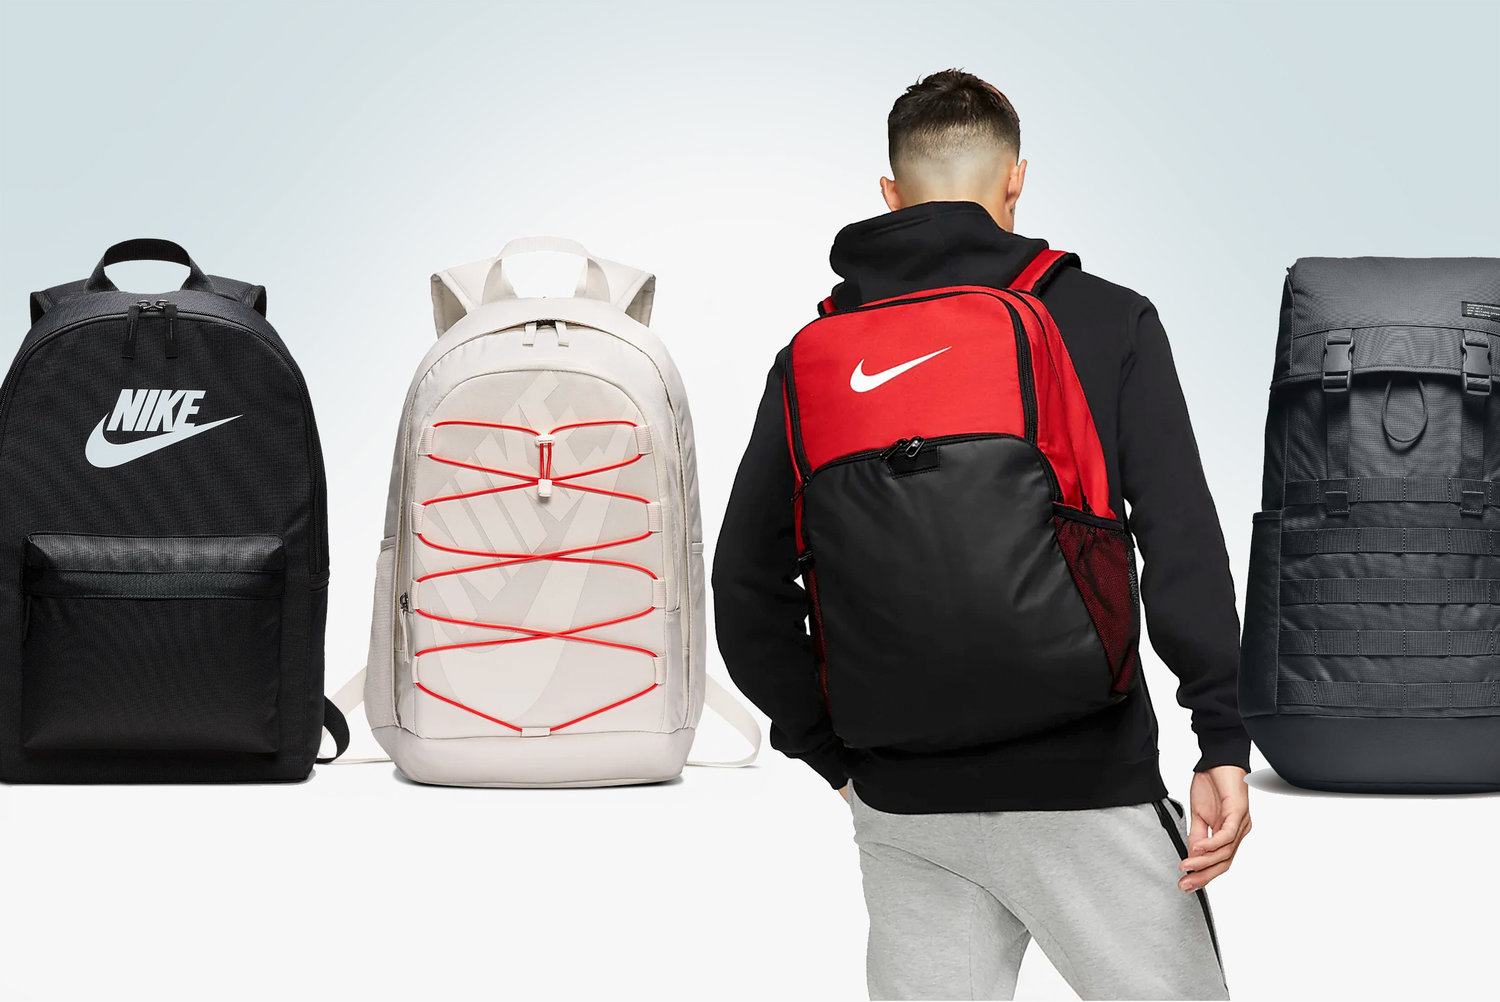 Comparar pañuelo Sesión plenaria Best Nike Backpacks for School - Ultimate 2021 Buying Guide | Backpackies